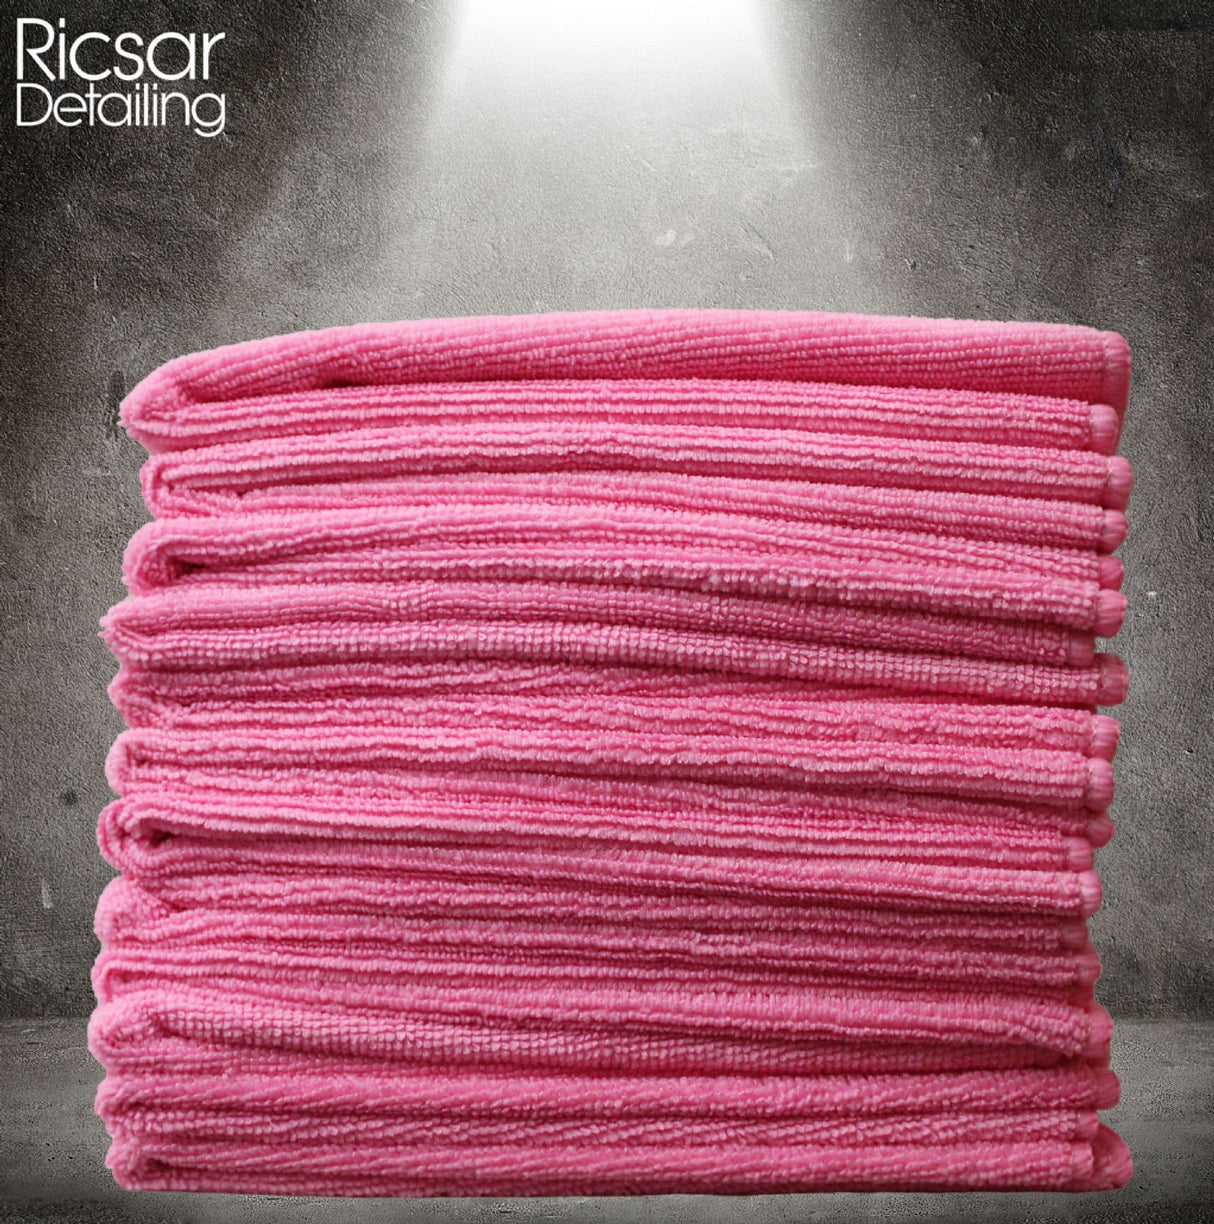 DETAIL GEAR Microfibre Cloths - Pink (Choose Bundle Size)